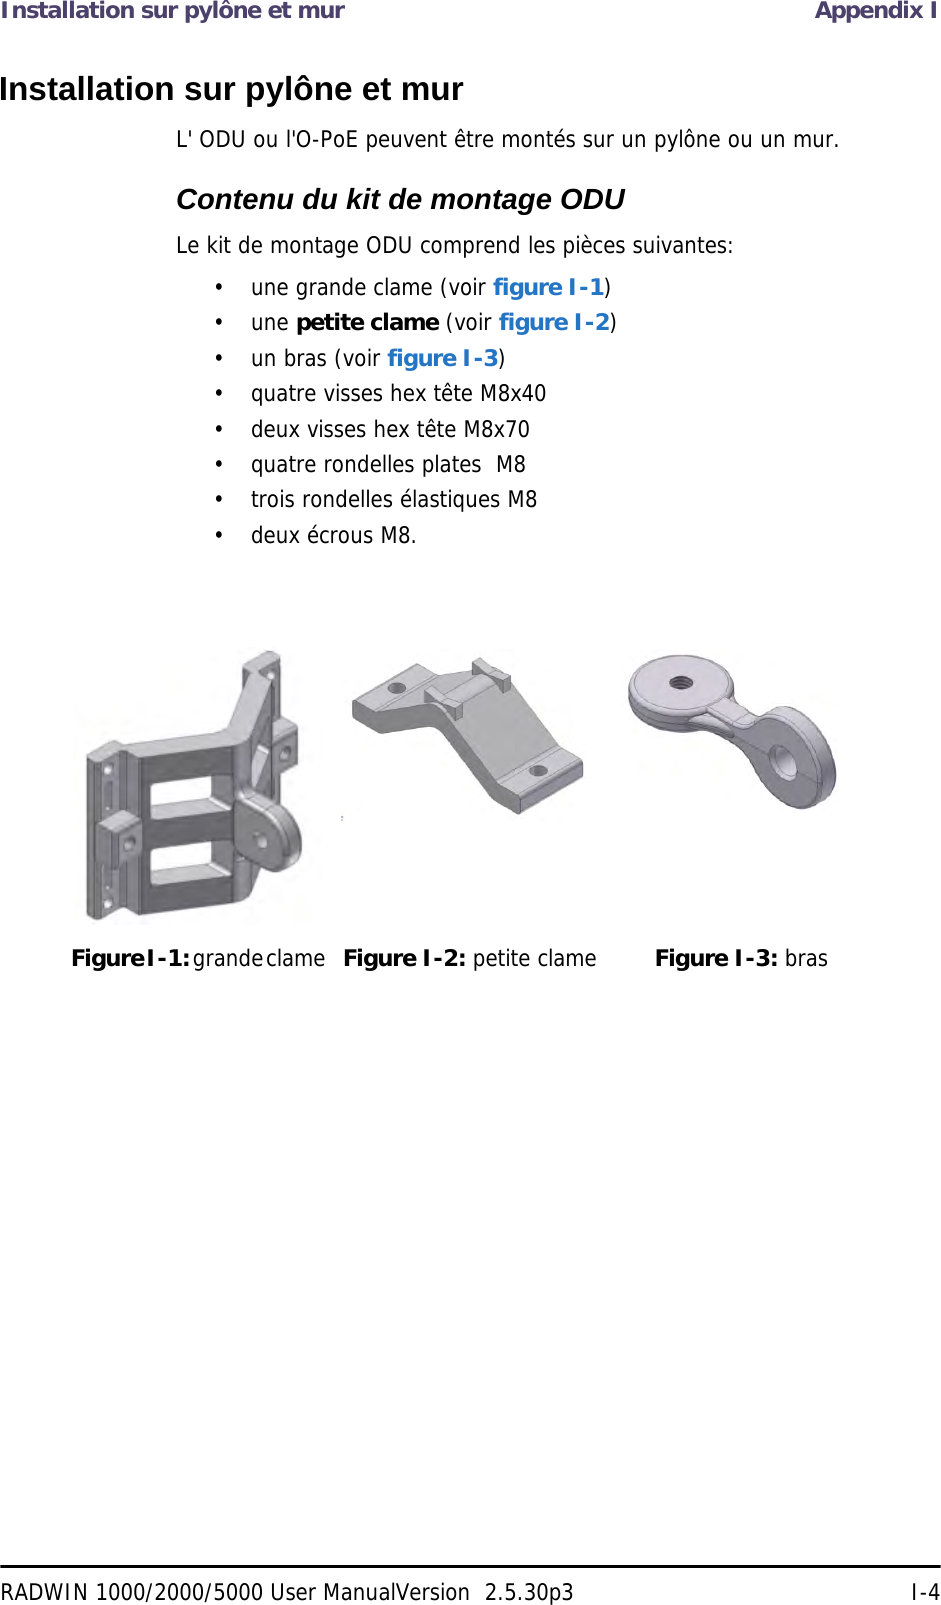 Installation sur pylône et mur Appendix IRADWIN 1000/2000/5000 User ManualVersion  2.5.30p3 I-4Installation sur pylône et murL&apos; ODU ou l&apos;O-PoE peuvent être montés sur un pylône ou un mur.Contenu du kit de montage ODULe kit de montage ODU comprend les pièces suivantes:• une grande clame (voir figure I-1)• une petite clame (voir figure I-2)• un bras (voir figure I-3)• quatre visses hex tête M8x40• deux visses hex tête M8x70• quatre rondelles plates  M8• trois rondelles élastiques M8• deux écrous M8.Figure I-1: grande clame Figure I-2: petite clame Figure I-3: bras